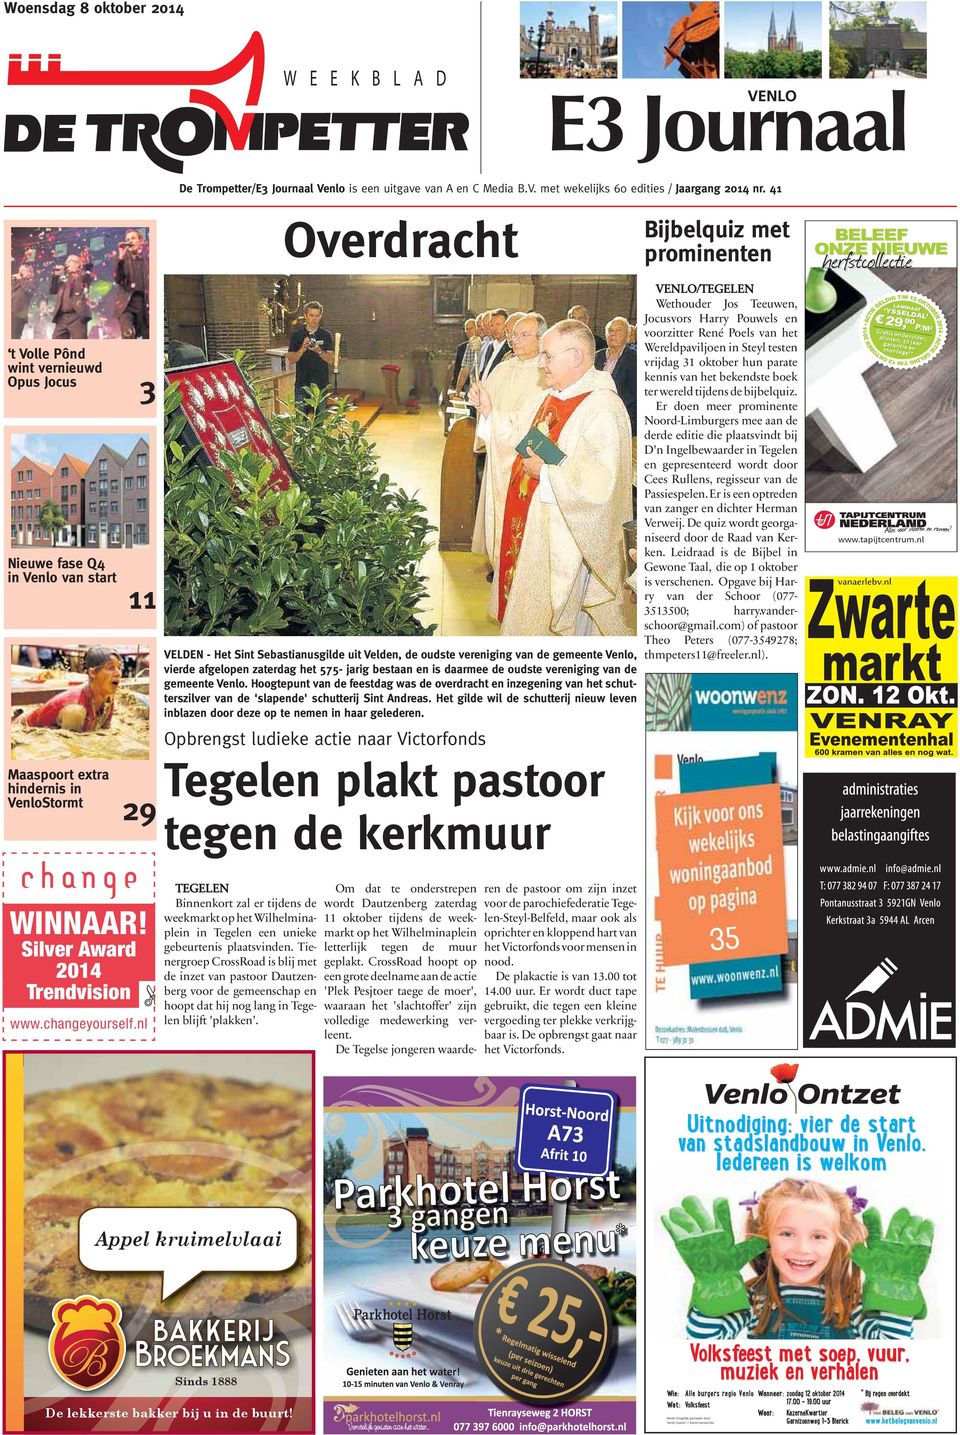 vereniging van de gemeente Venlo, vierde afgelopen zaterdag het 575- jarig bestaan en is daarmee de oudste vereniging van de gemeente Venlo.